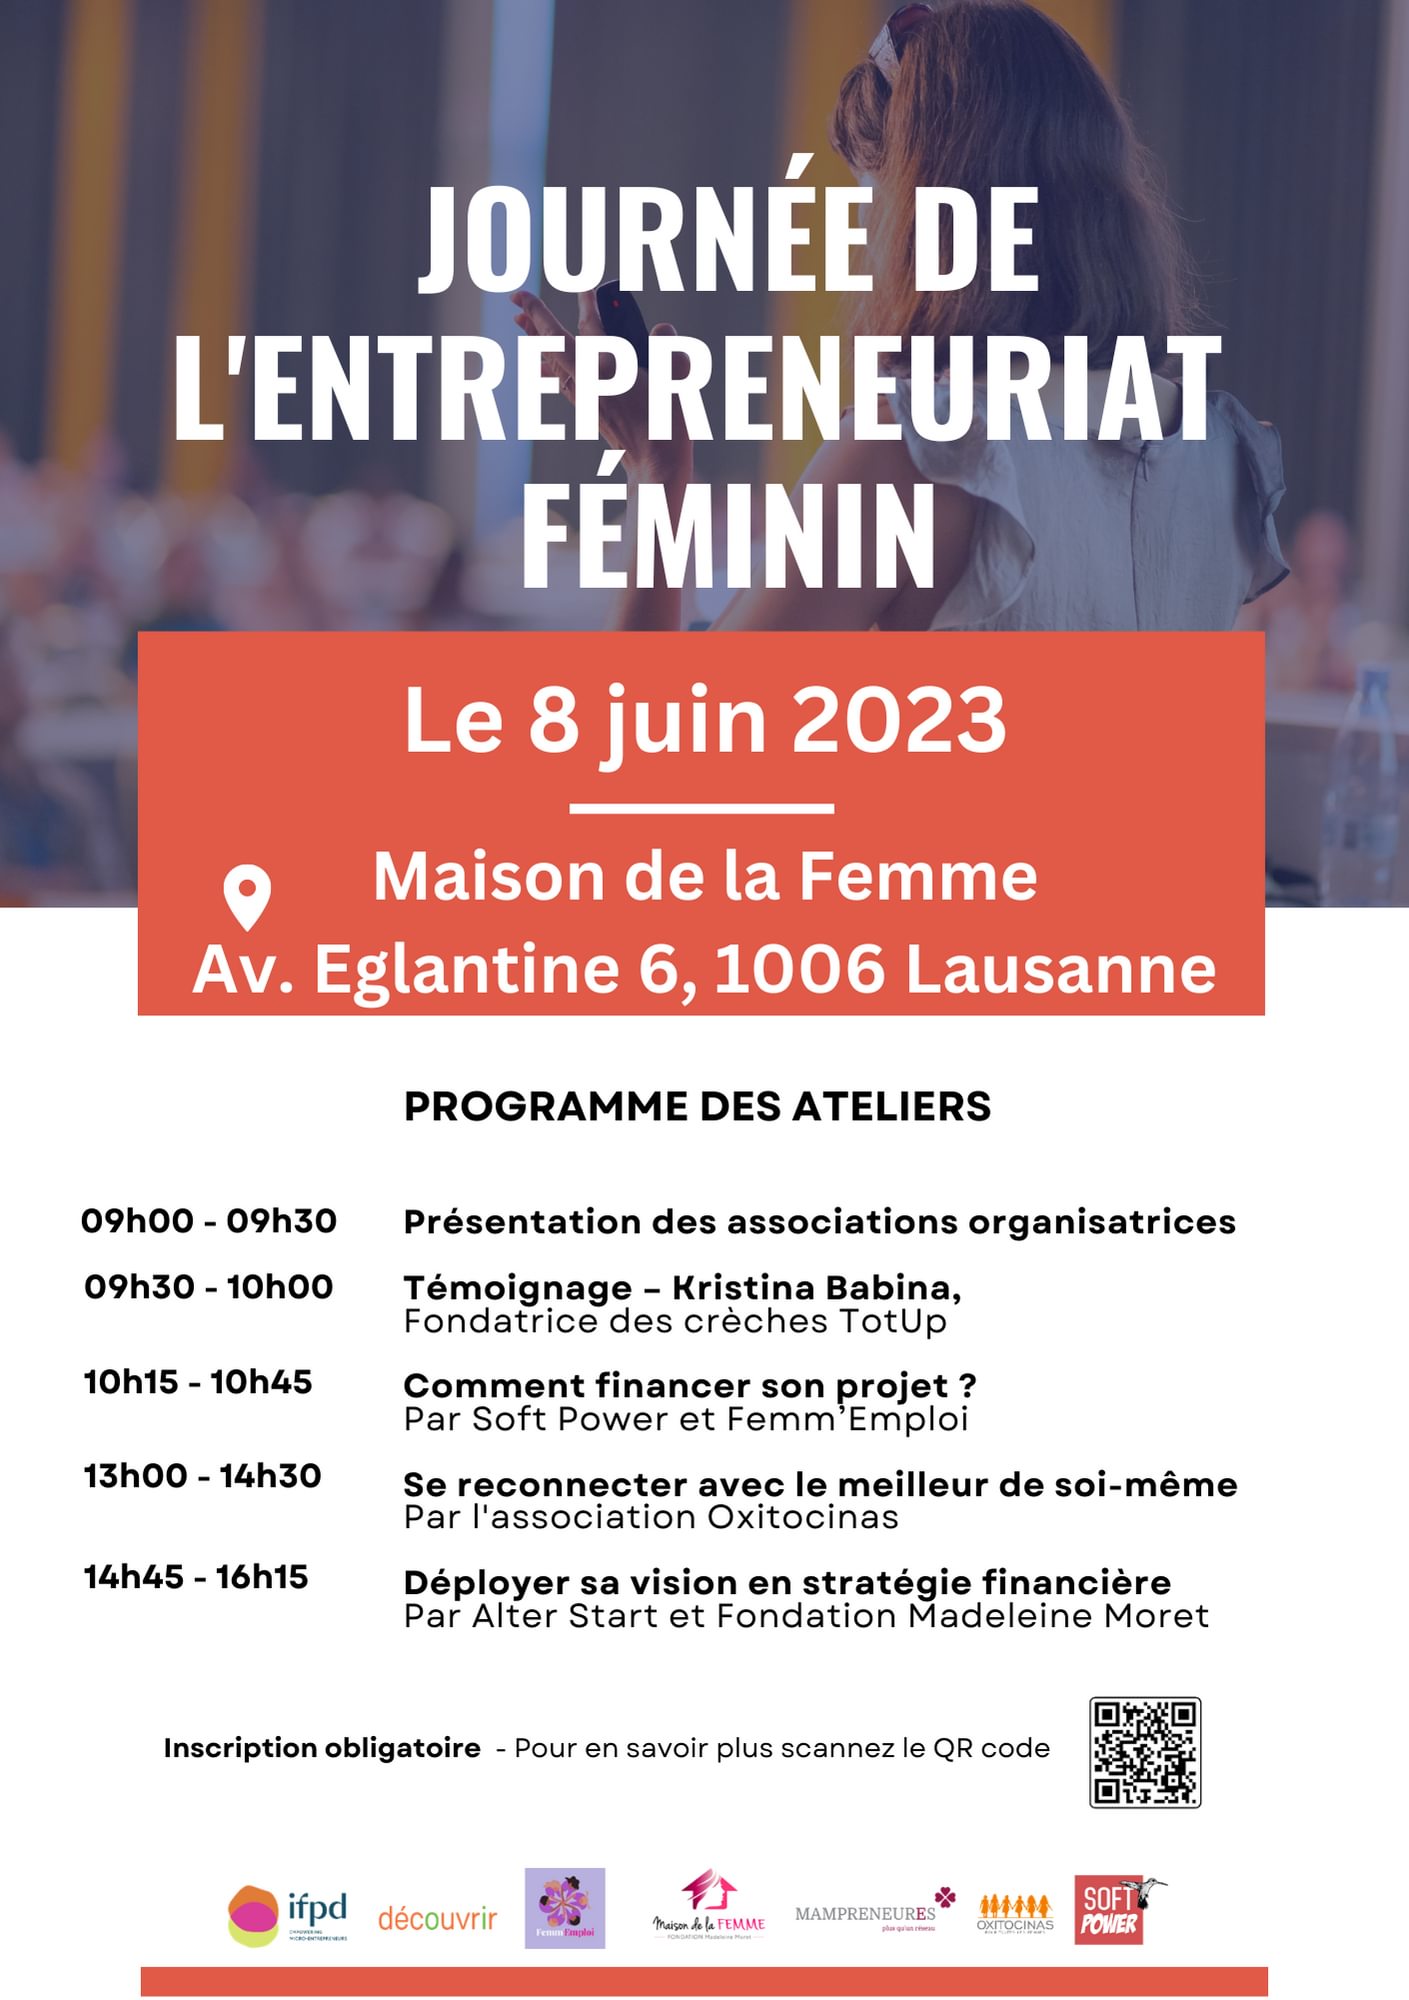 Journée de l'entrepreneuriat féminin 2023 à Lausanne